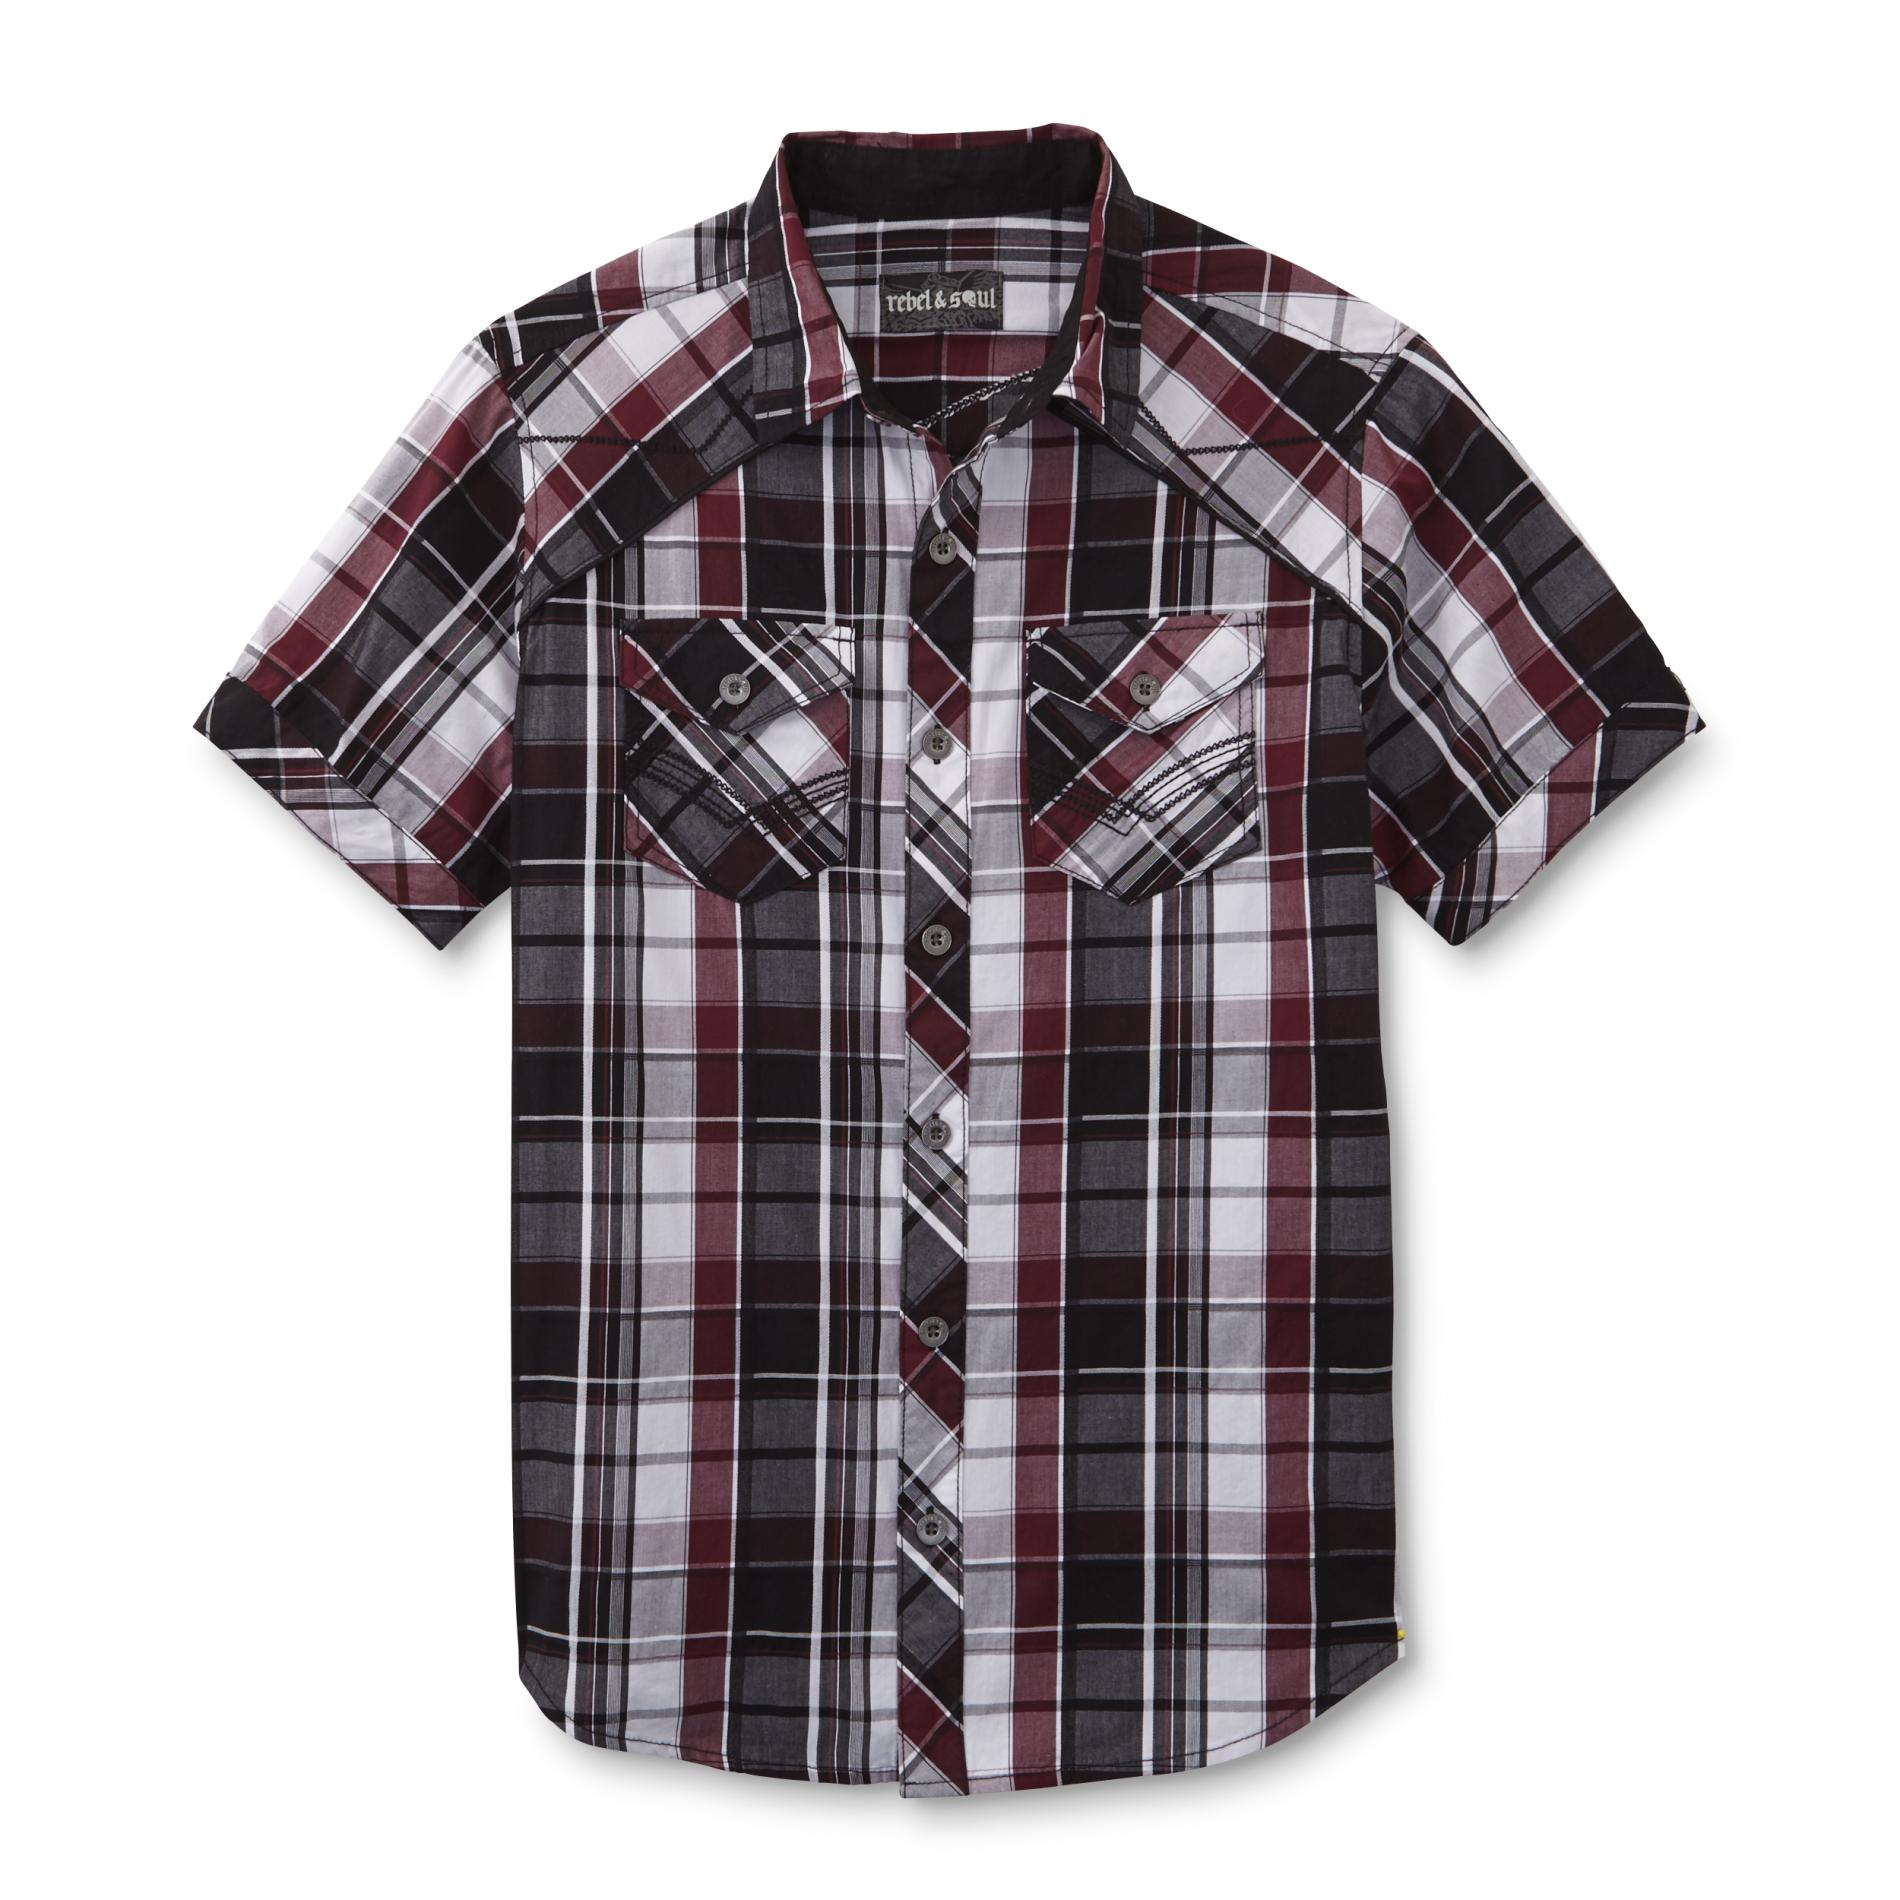 Young Men's Button-Front Shirt - Plaid